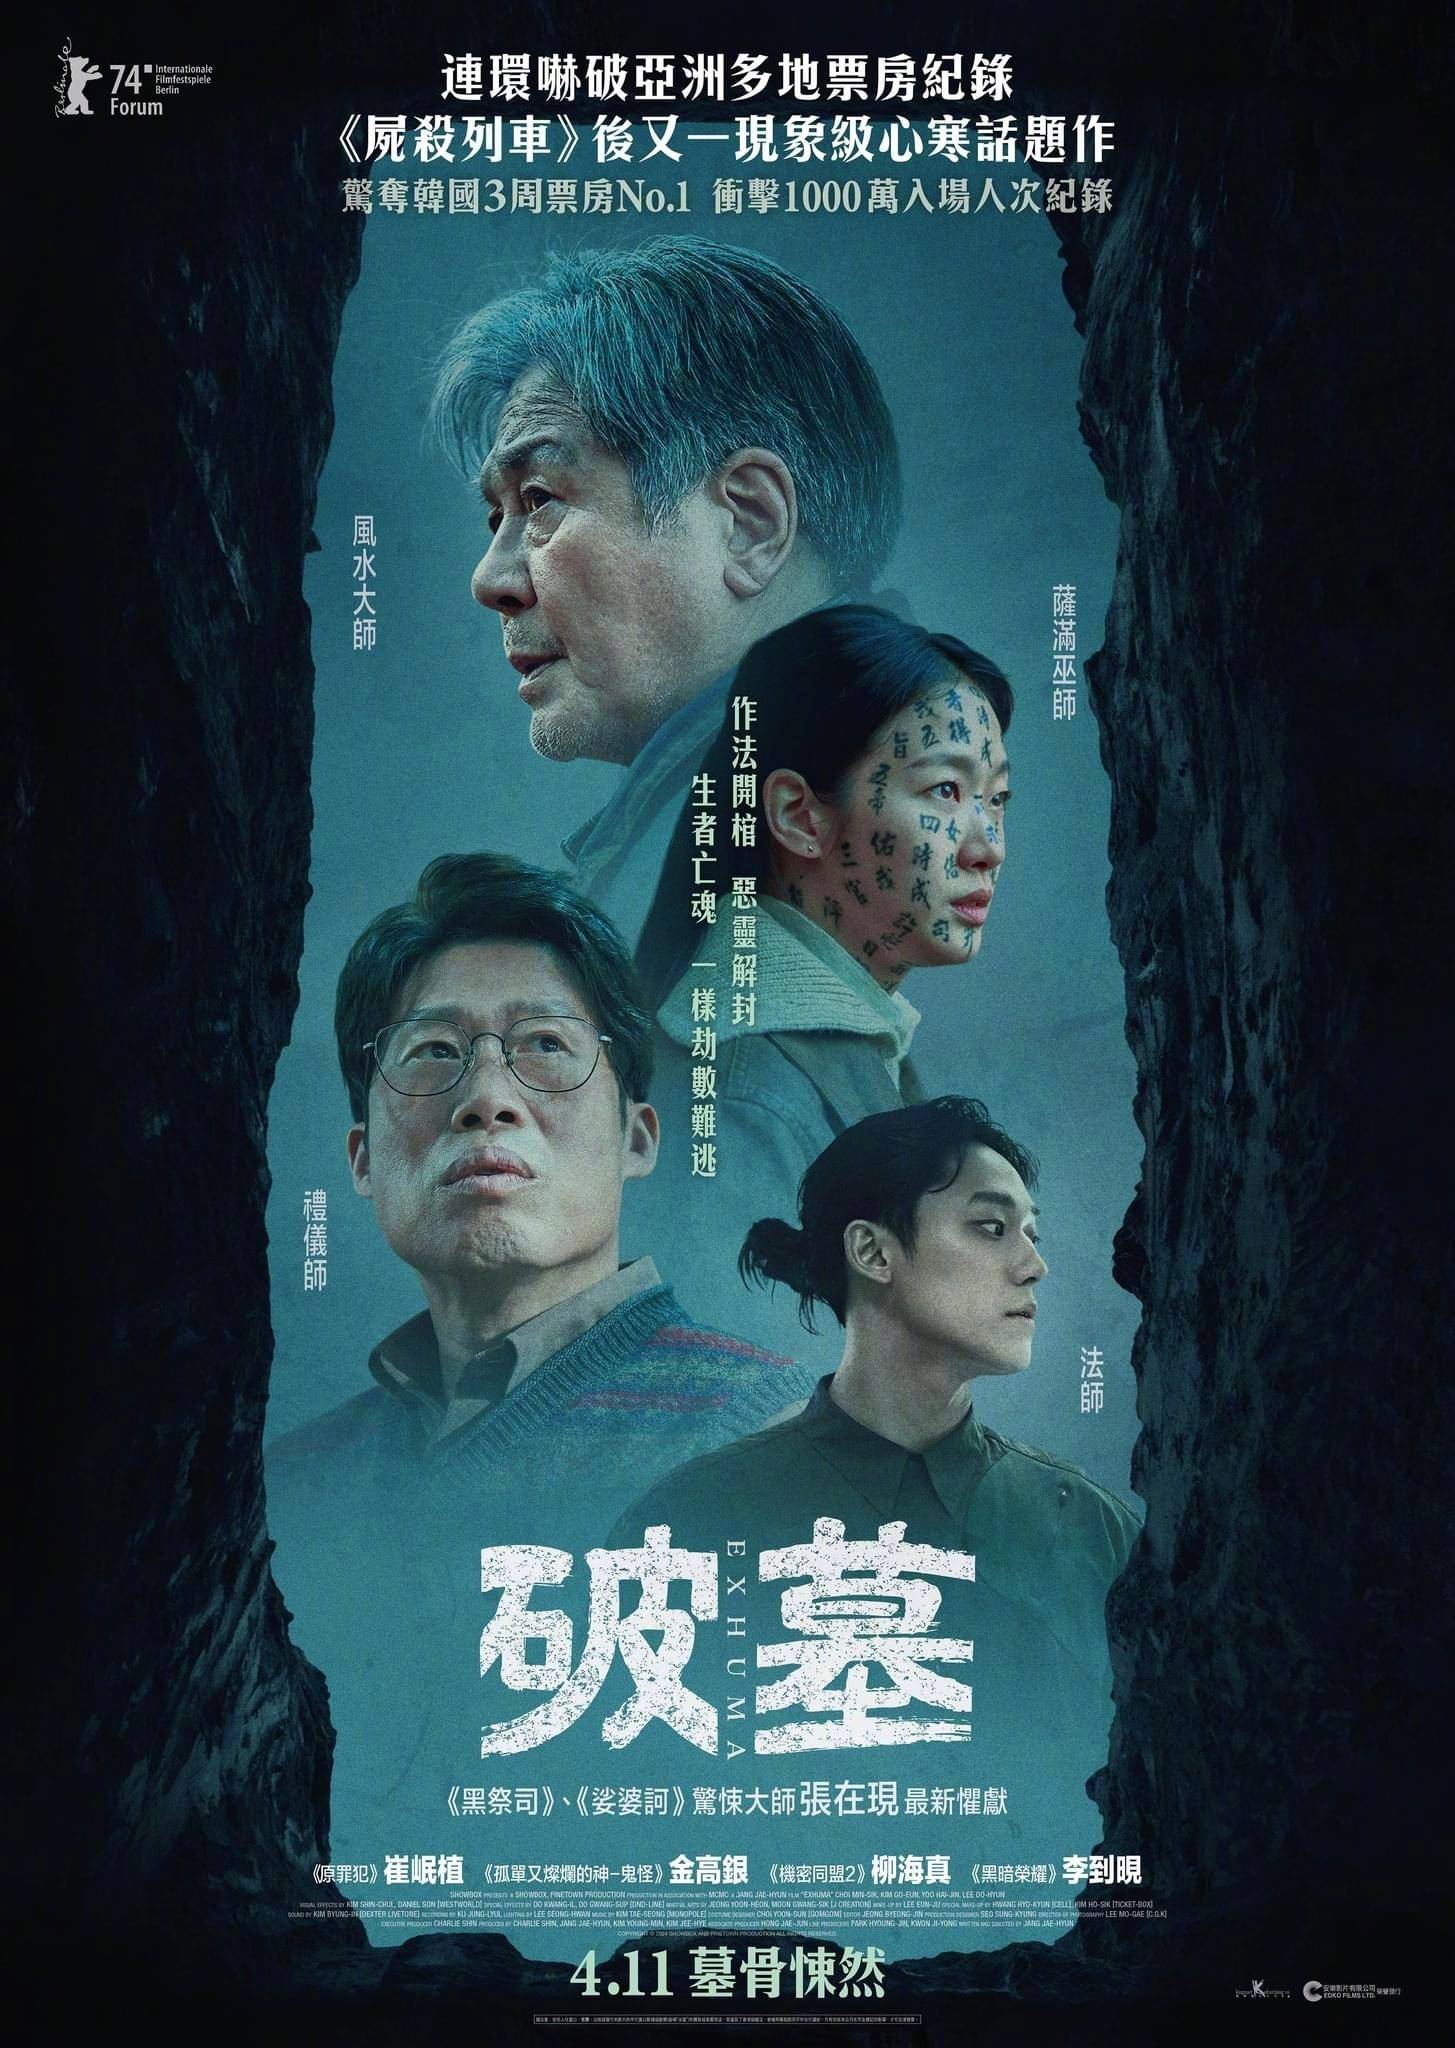 《破墓》：当传统遇上现代，一场心跳与哲思的韩国恐怖电影之旅